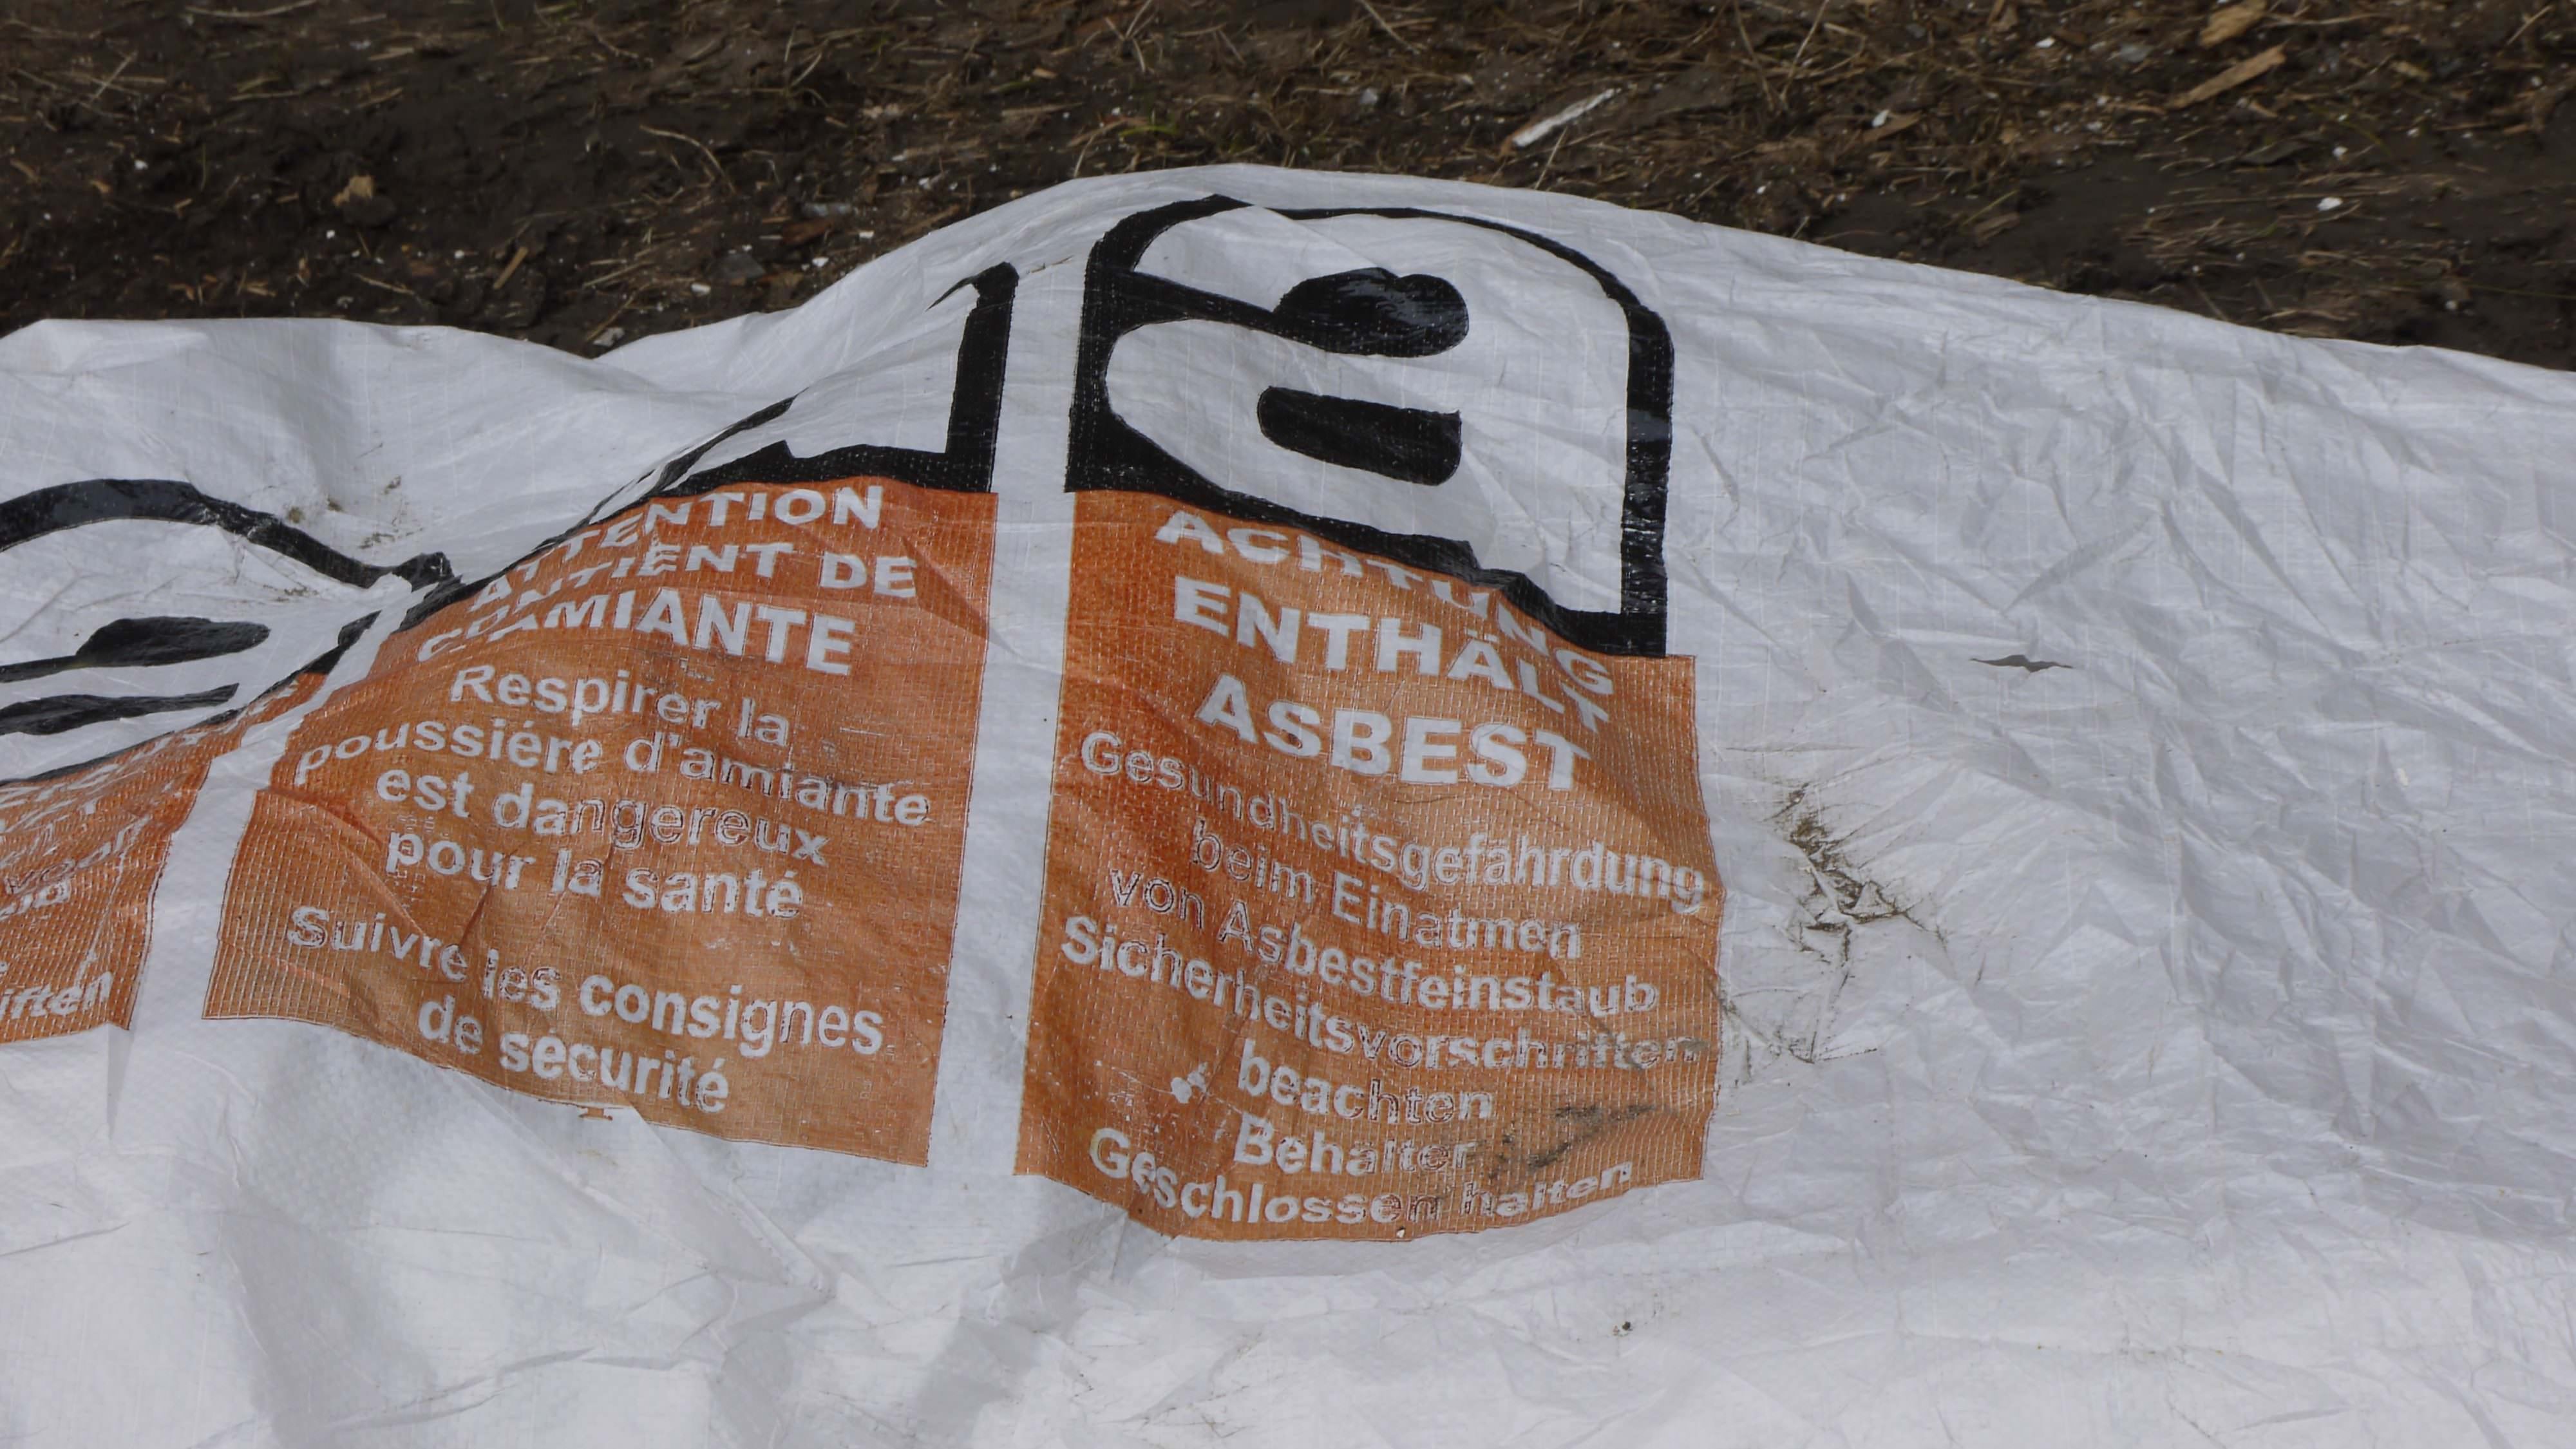 "ACHTUNG ENTHÄLT ASBEST. Gesundheitsgefährdung beim Einatmen von Asbestfeinstaub. Sicherheitsvorschriften beachten. Behälter geschlossen halten" | Foto: M. Schülke